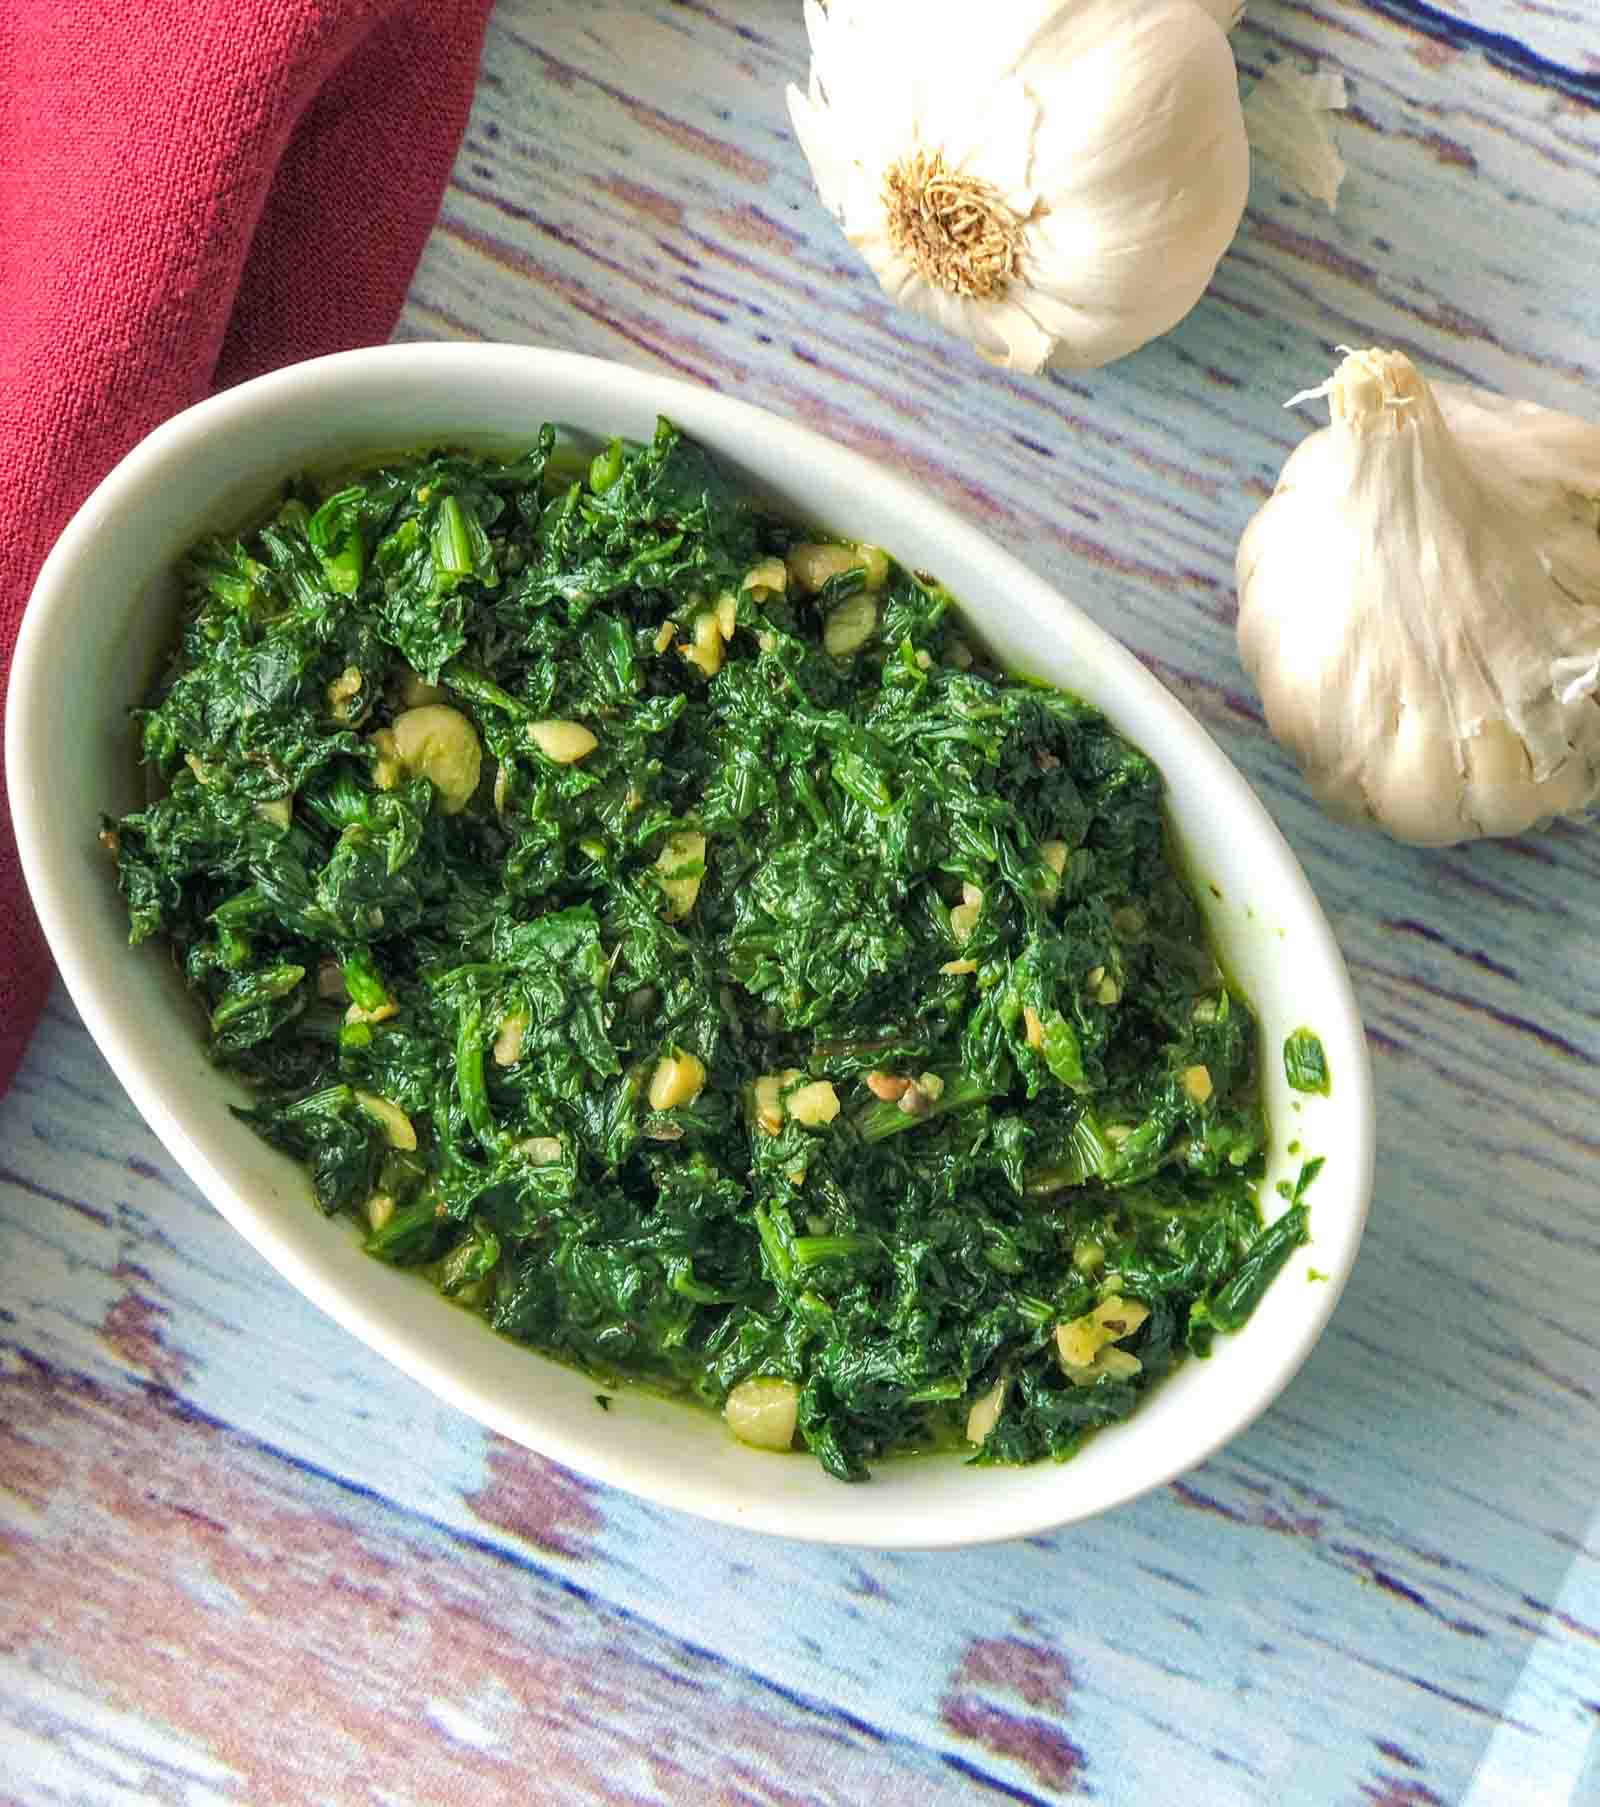 Spinach Stir Fry Recipe With Garlic